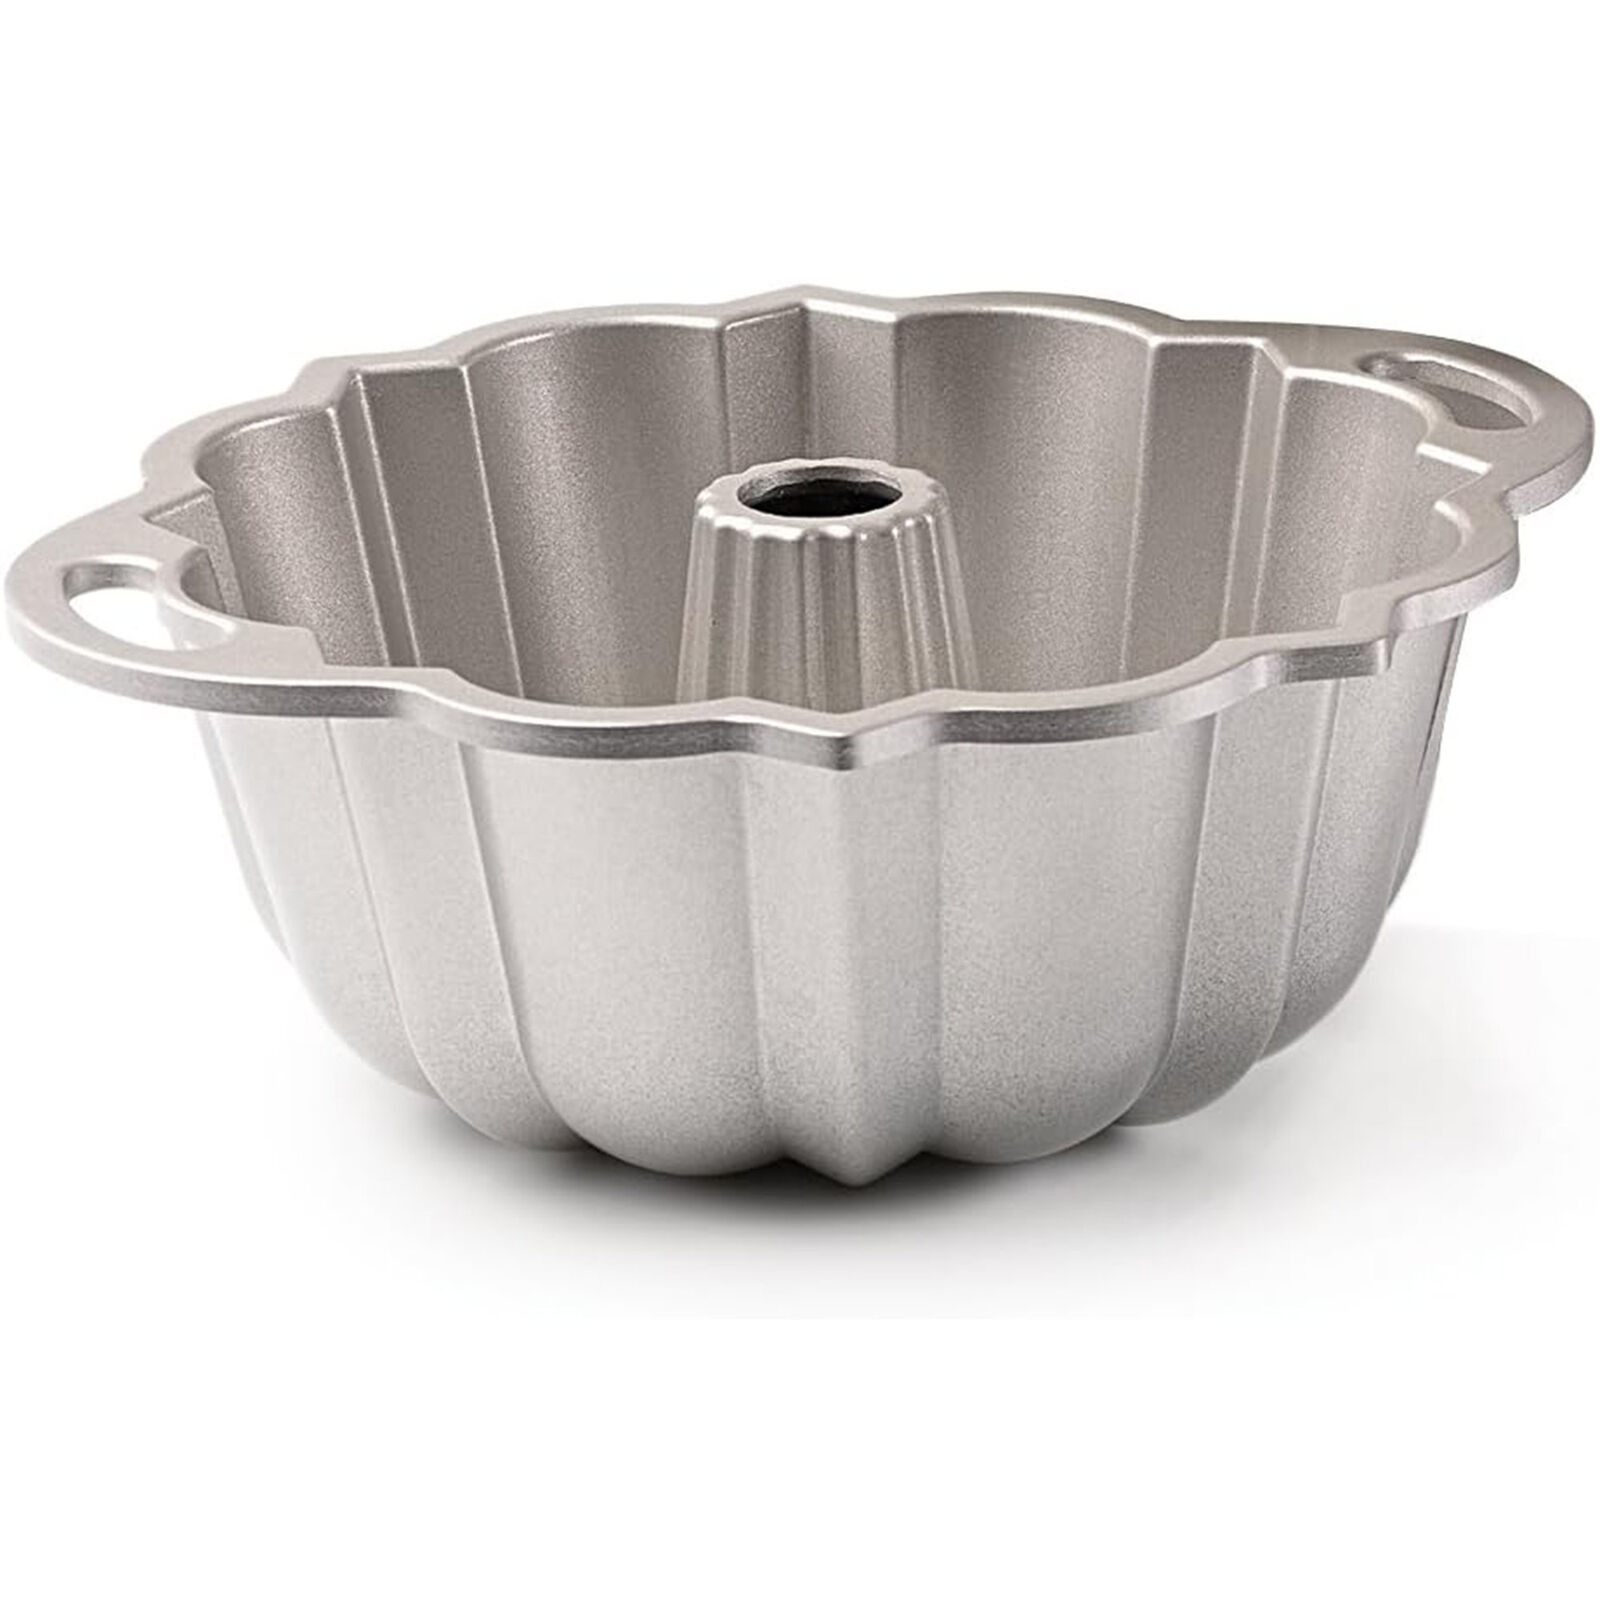 Nordic Ware Platinum Collection Cast Aluminum Bundt Pan, 6-Cup